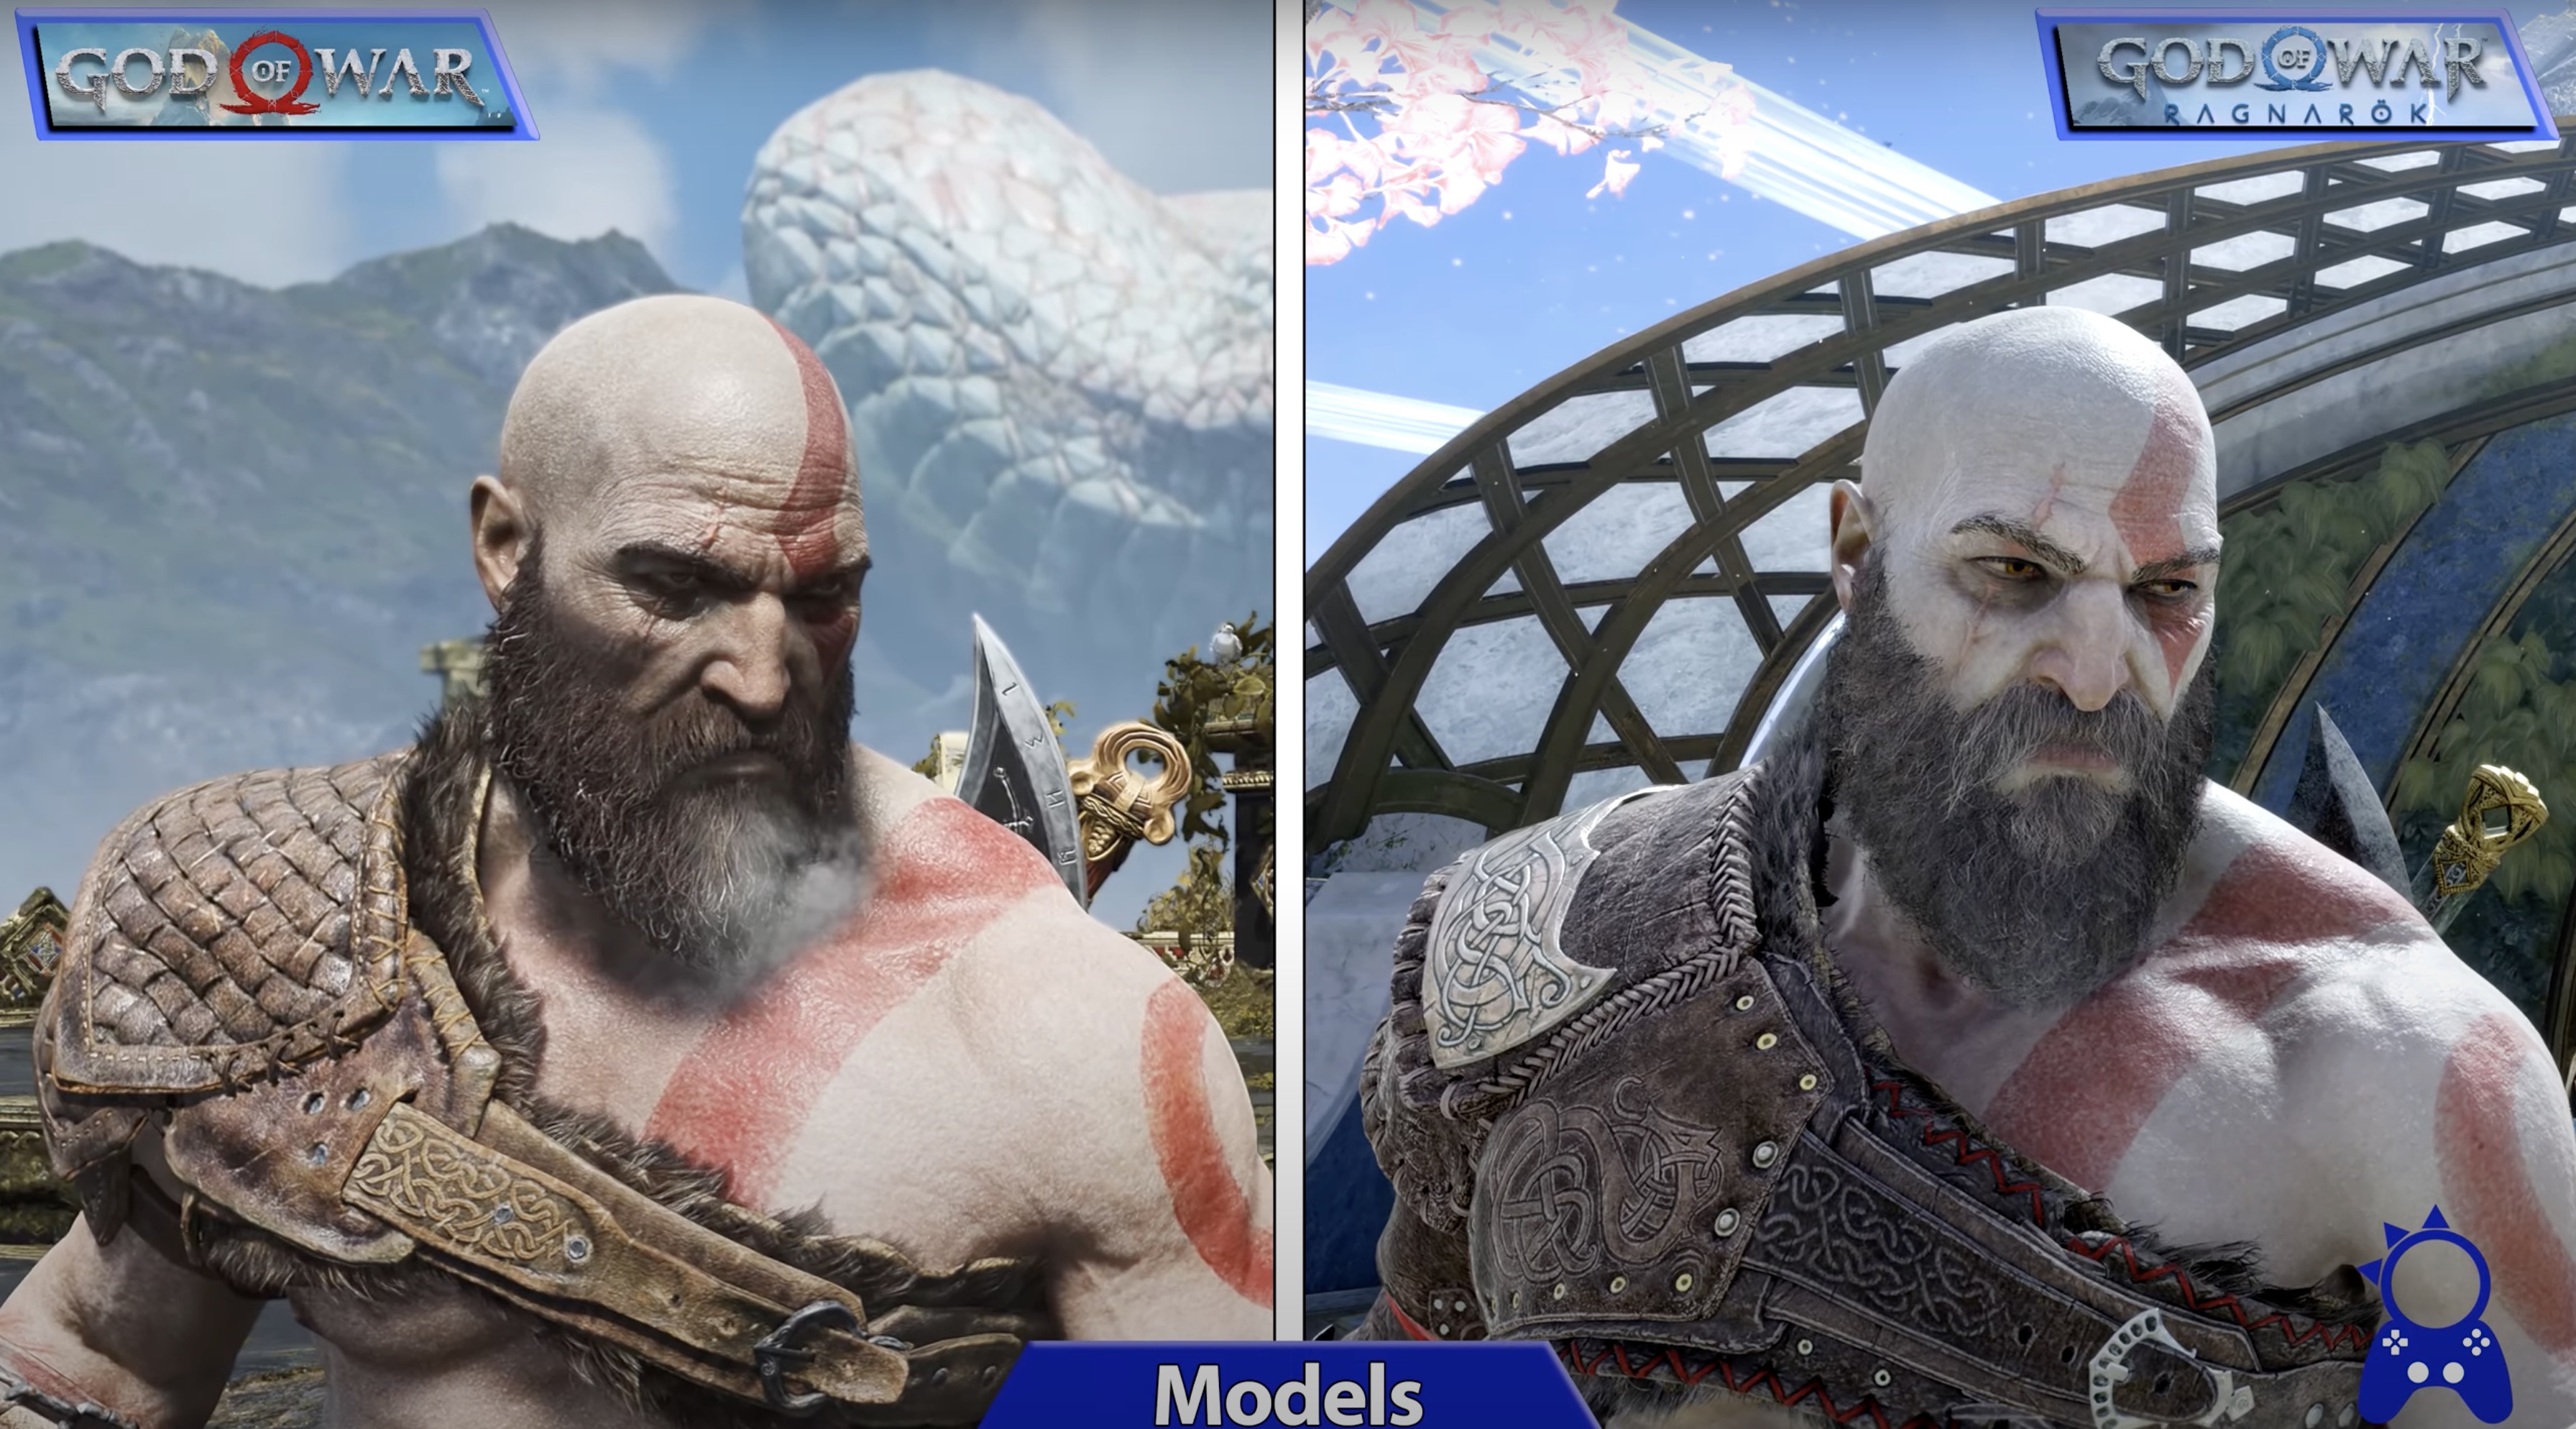 God of War 2018 vs God of War: Ragnarok, PC Ultra vs PS5